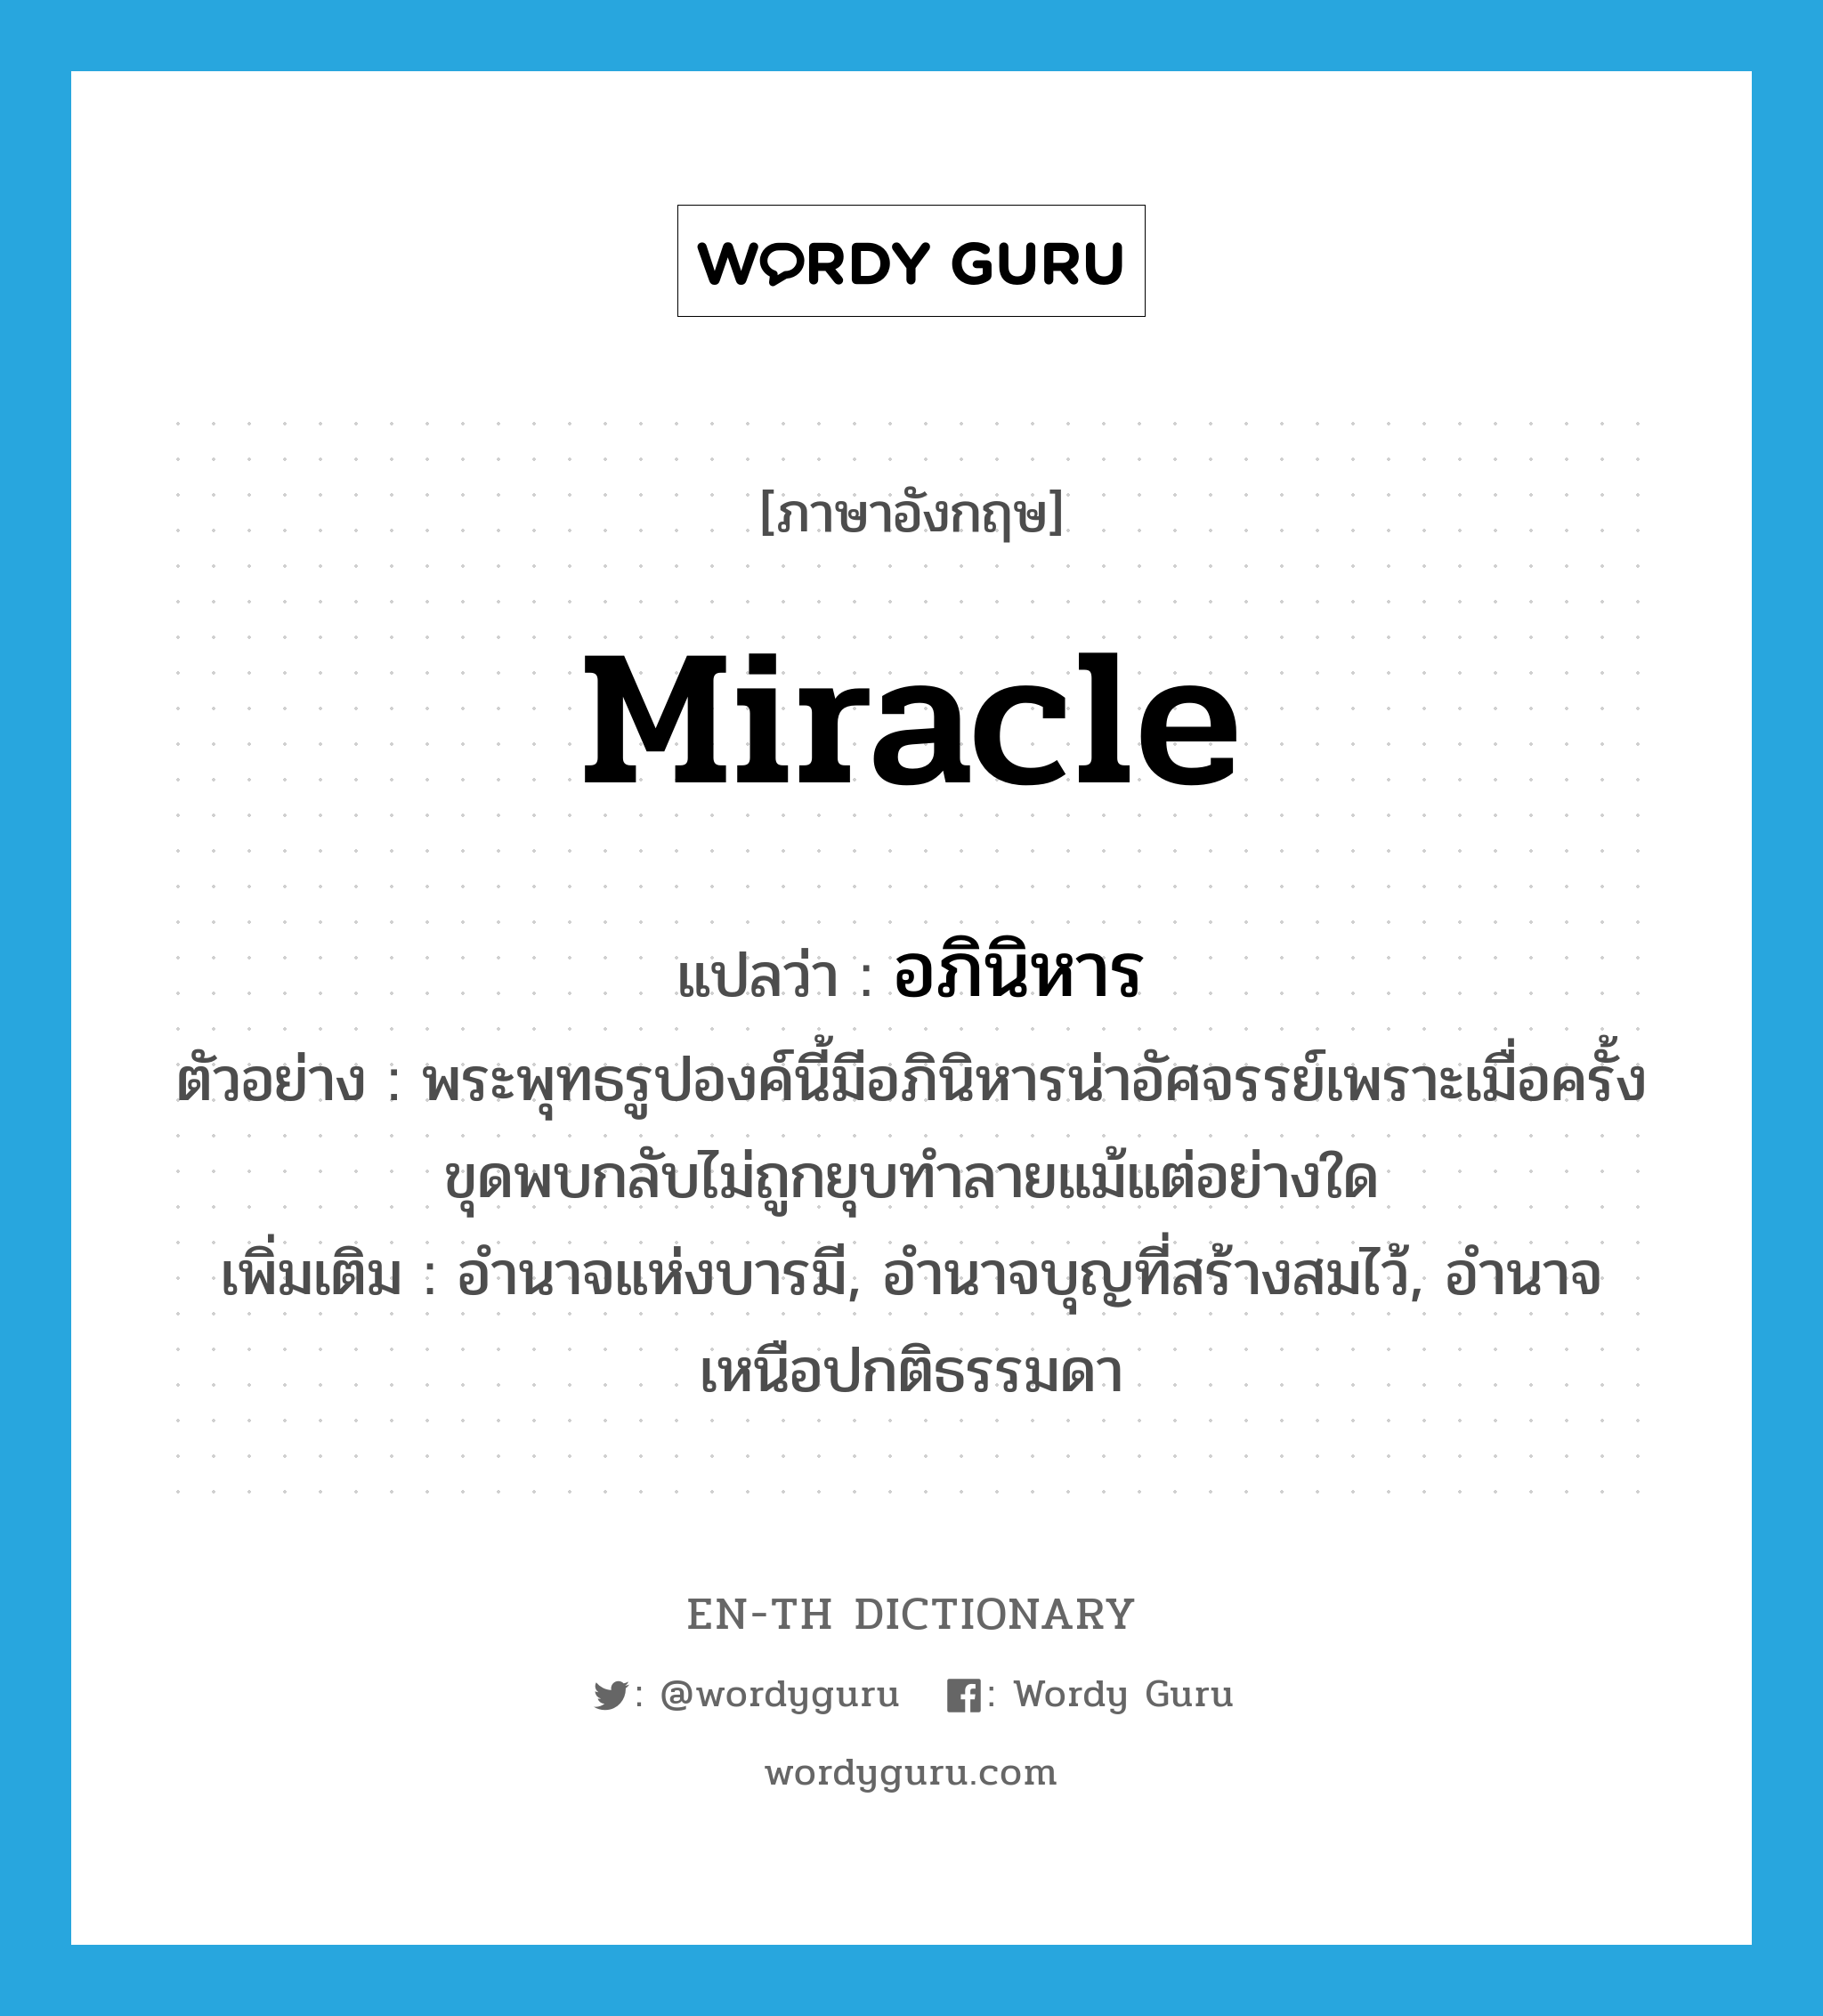 miracle แปลว่า?, คำศัพท์ภาษาอังกฤษ miracle แปลว่า อภินิหาร ประเภท N ตัวอย่าง พระพุทธรูปองค์นี้มีอภินิหารน่าอัศจรรย์เพราะเมื่อครั้งขุดพบกลับไม่ถูกยุบทำลายแม้แต่อย่างใด เพิ่มเติม อำนาจแห่งบารมี, อำนาจบุญที่สร้างสมไว้, อำนาจเหนือปกติธรรมดา หมวด N